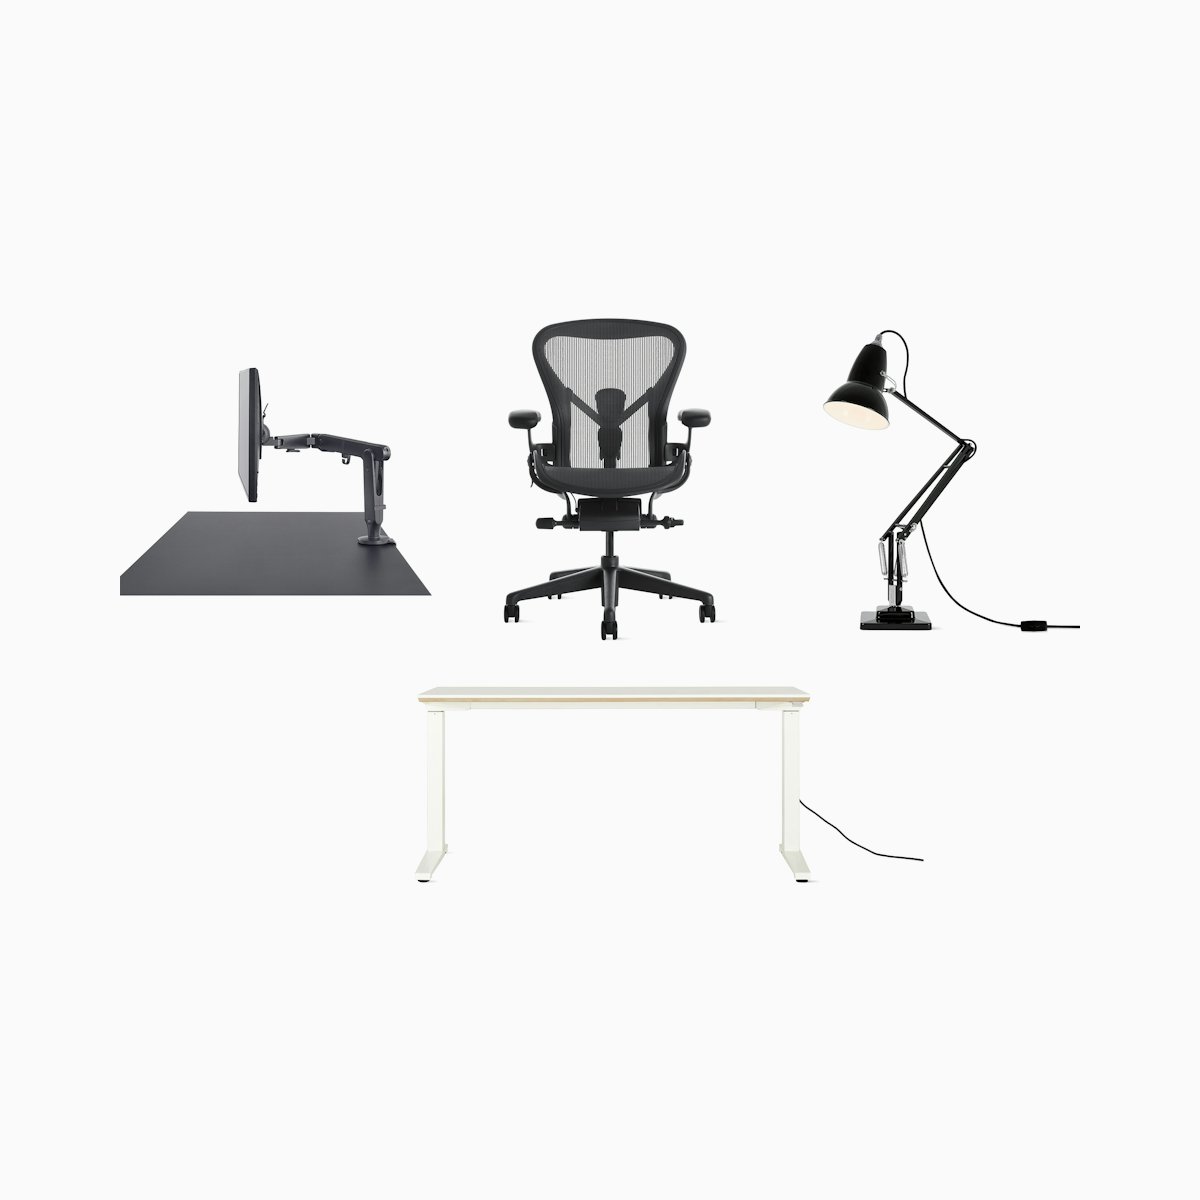 Aeron Chair - Renew Desk WFH Bundle